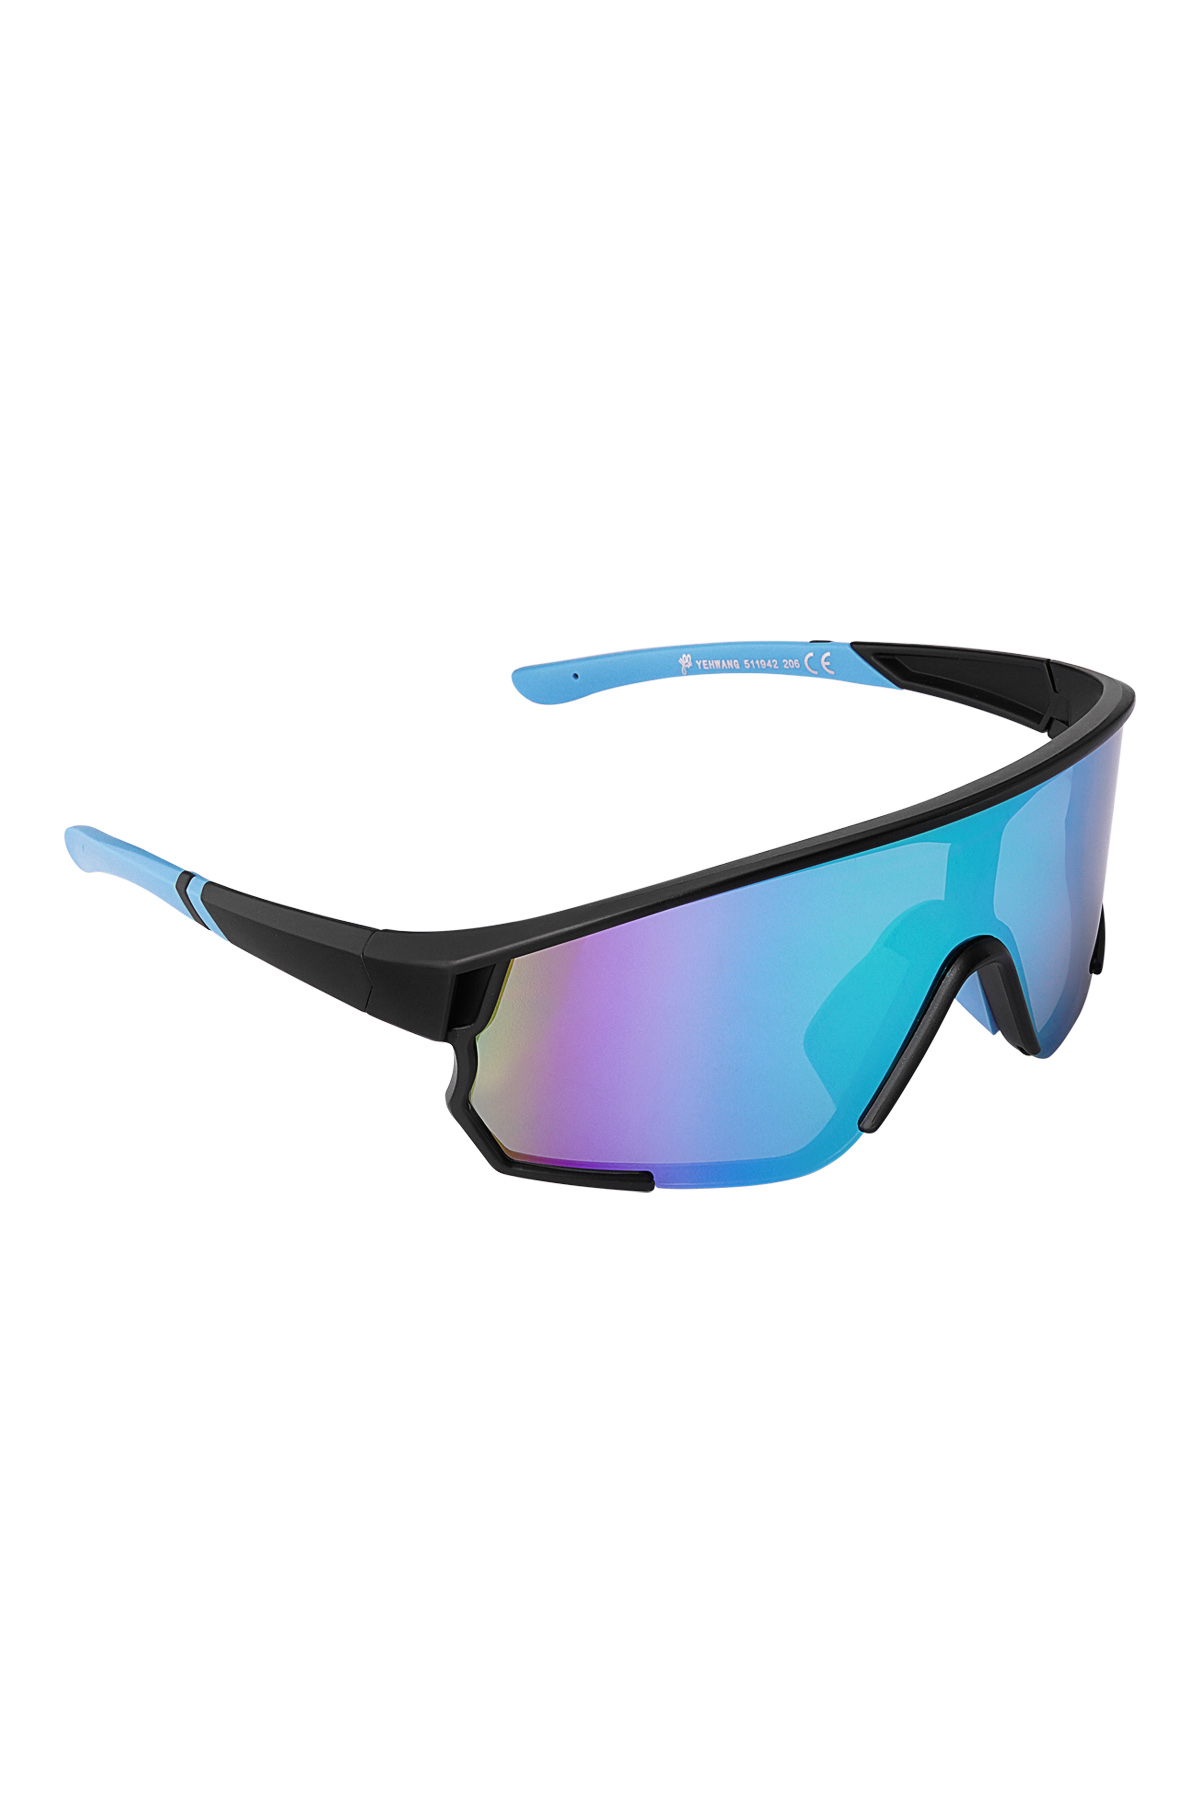 Zonnebril gekleurde glazen - zwart/blauw h5 